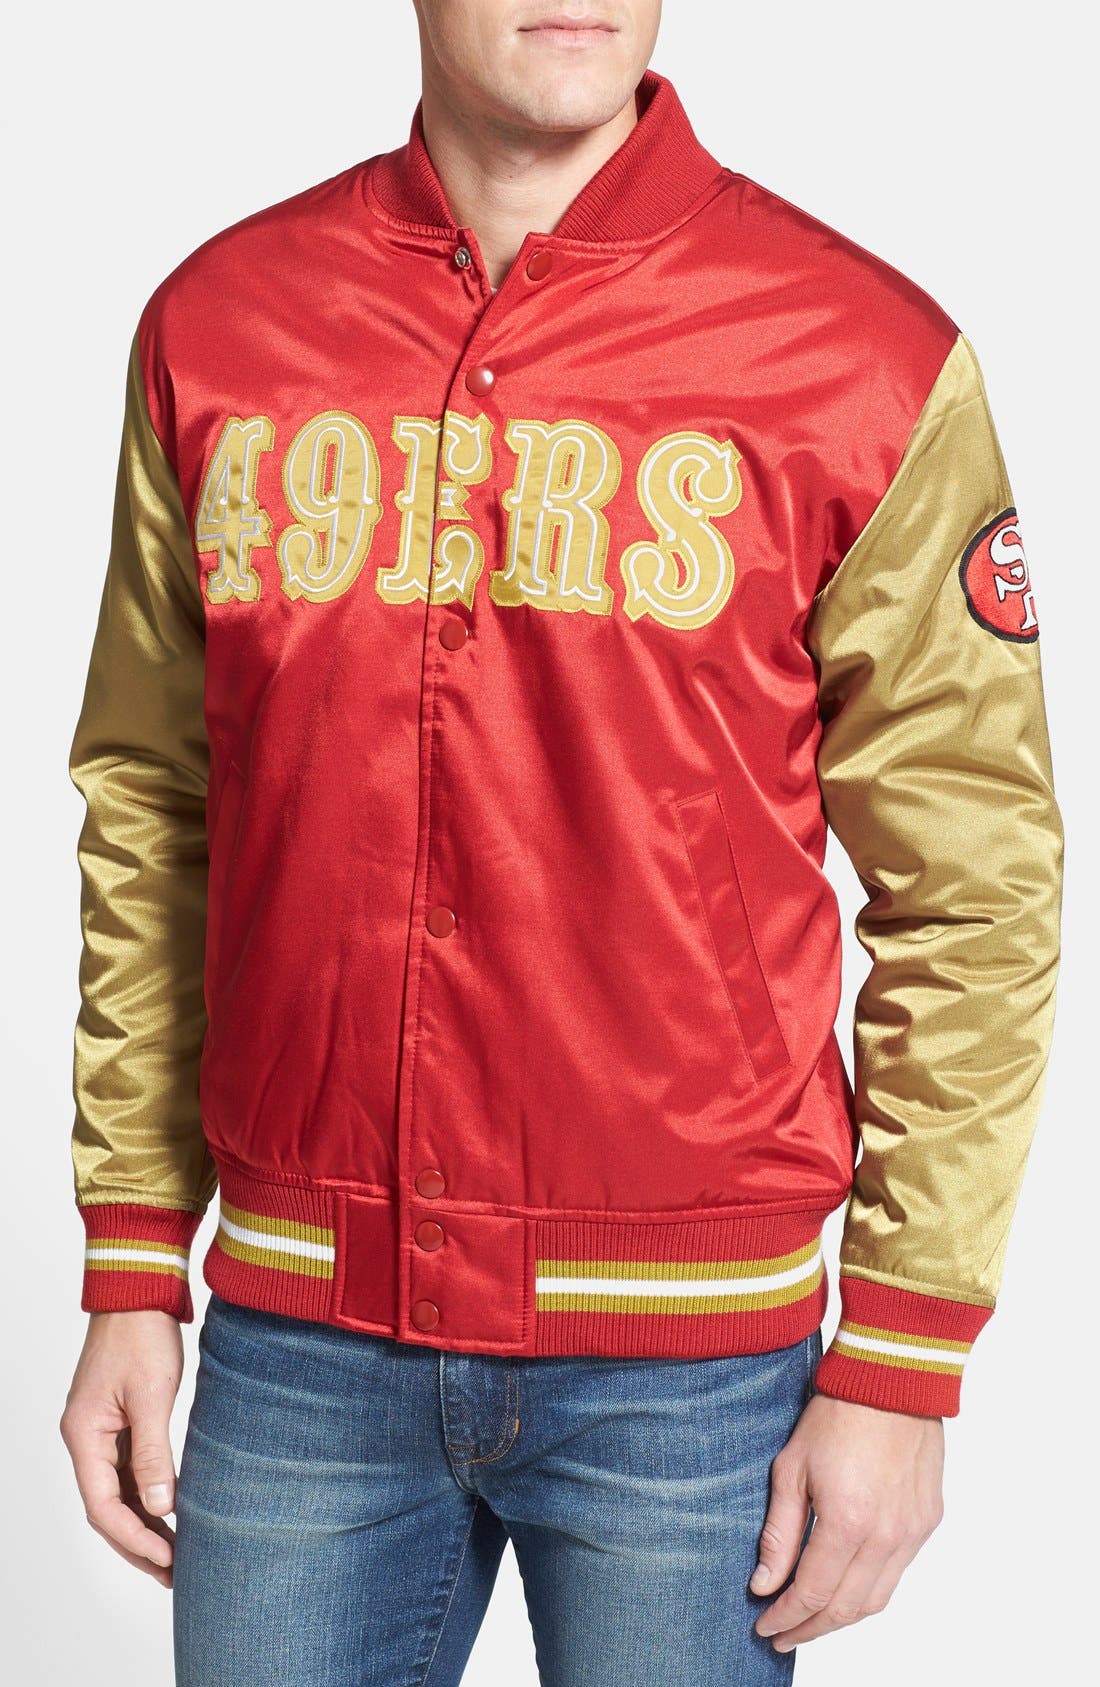 kids 49ers jacket